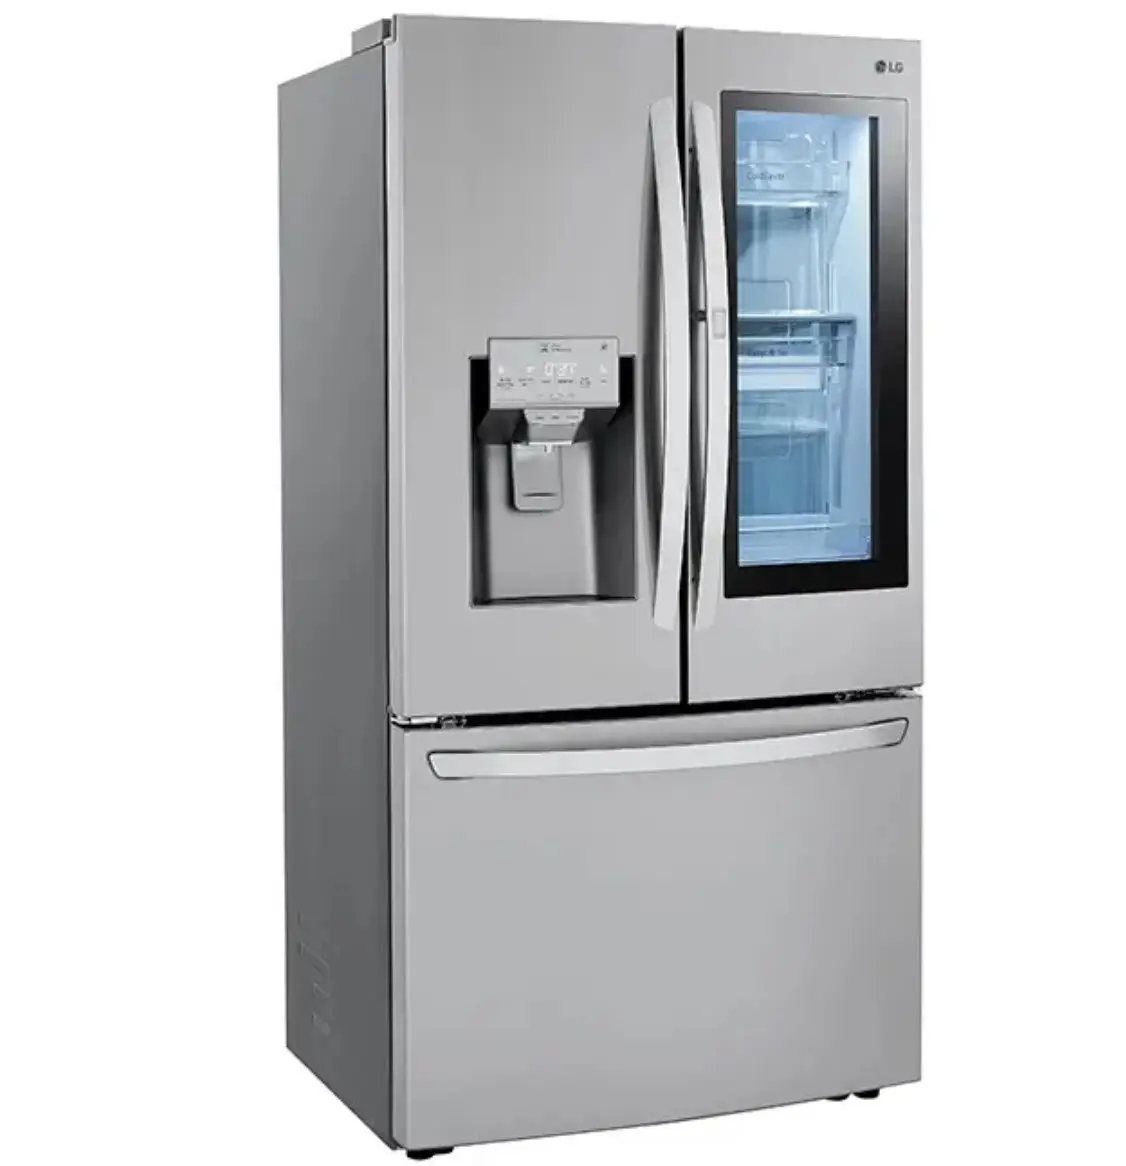 Большая скидка на холодильник на этой неделе, экономия сегодня-скидка 28 cu ft 4 двери холодильника на французскую дверь!